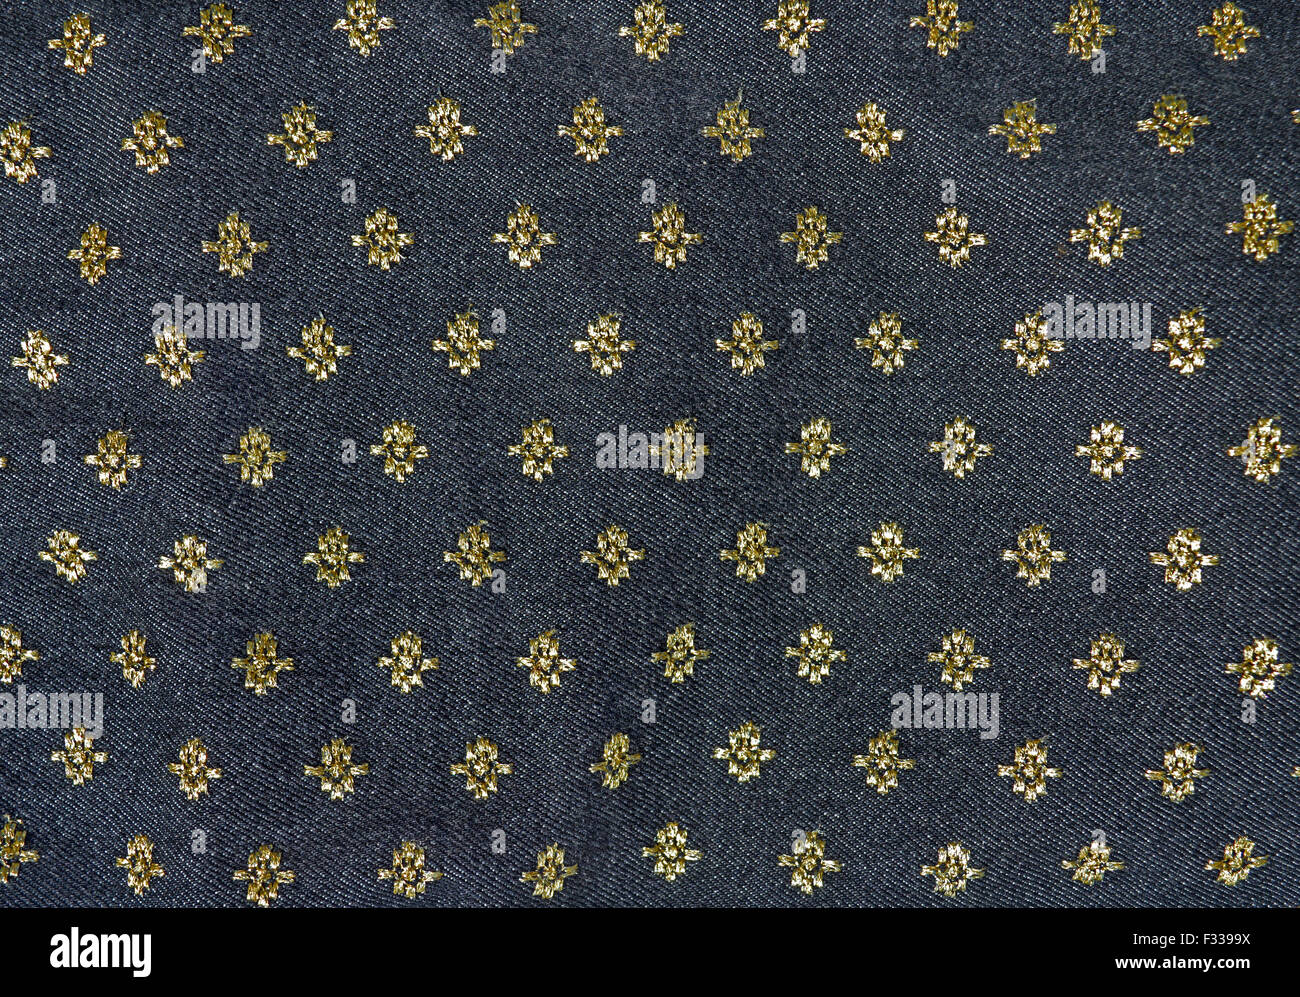 Gold und schwarz floral Stoff Hintergrund Stockfoto